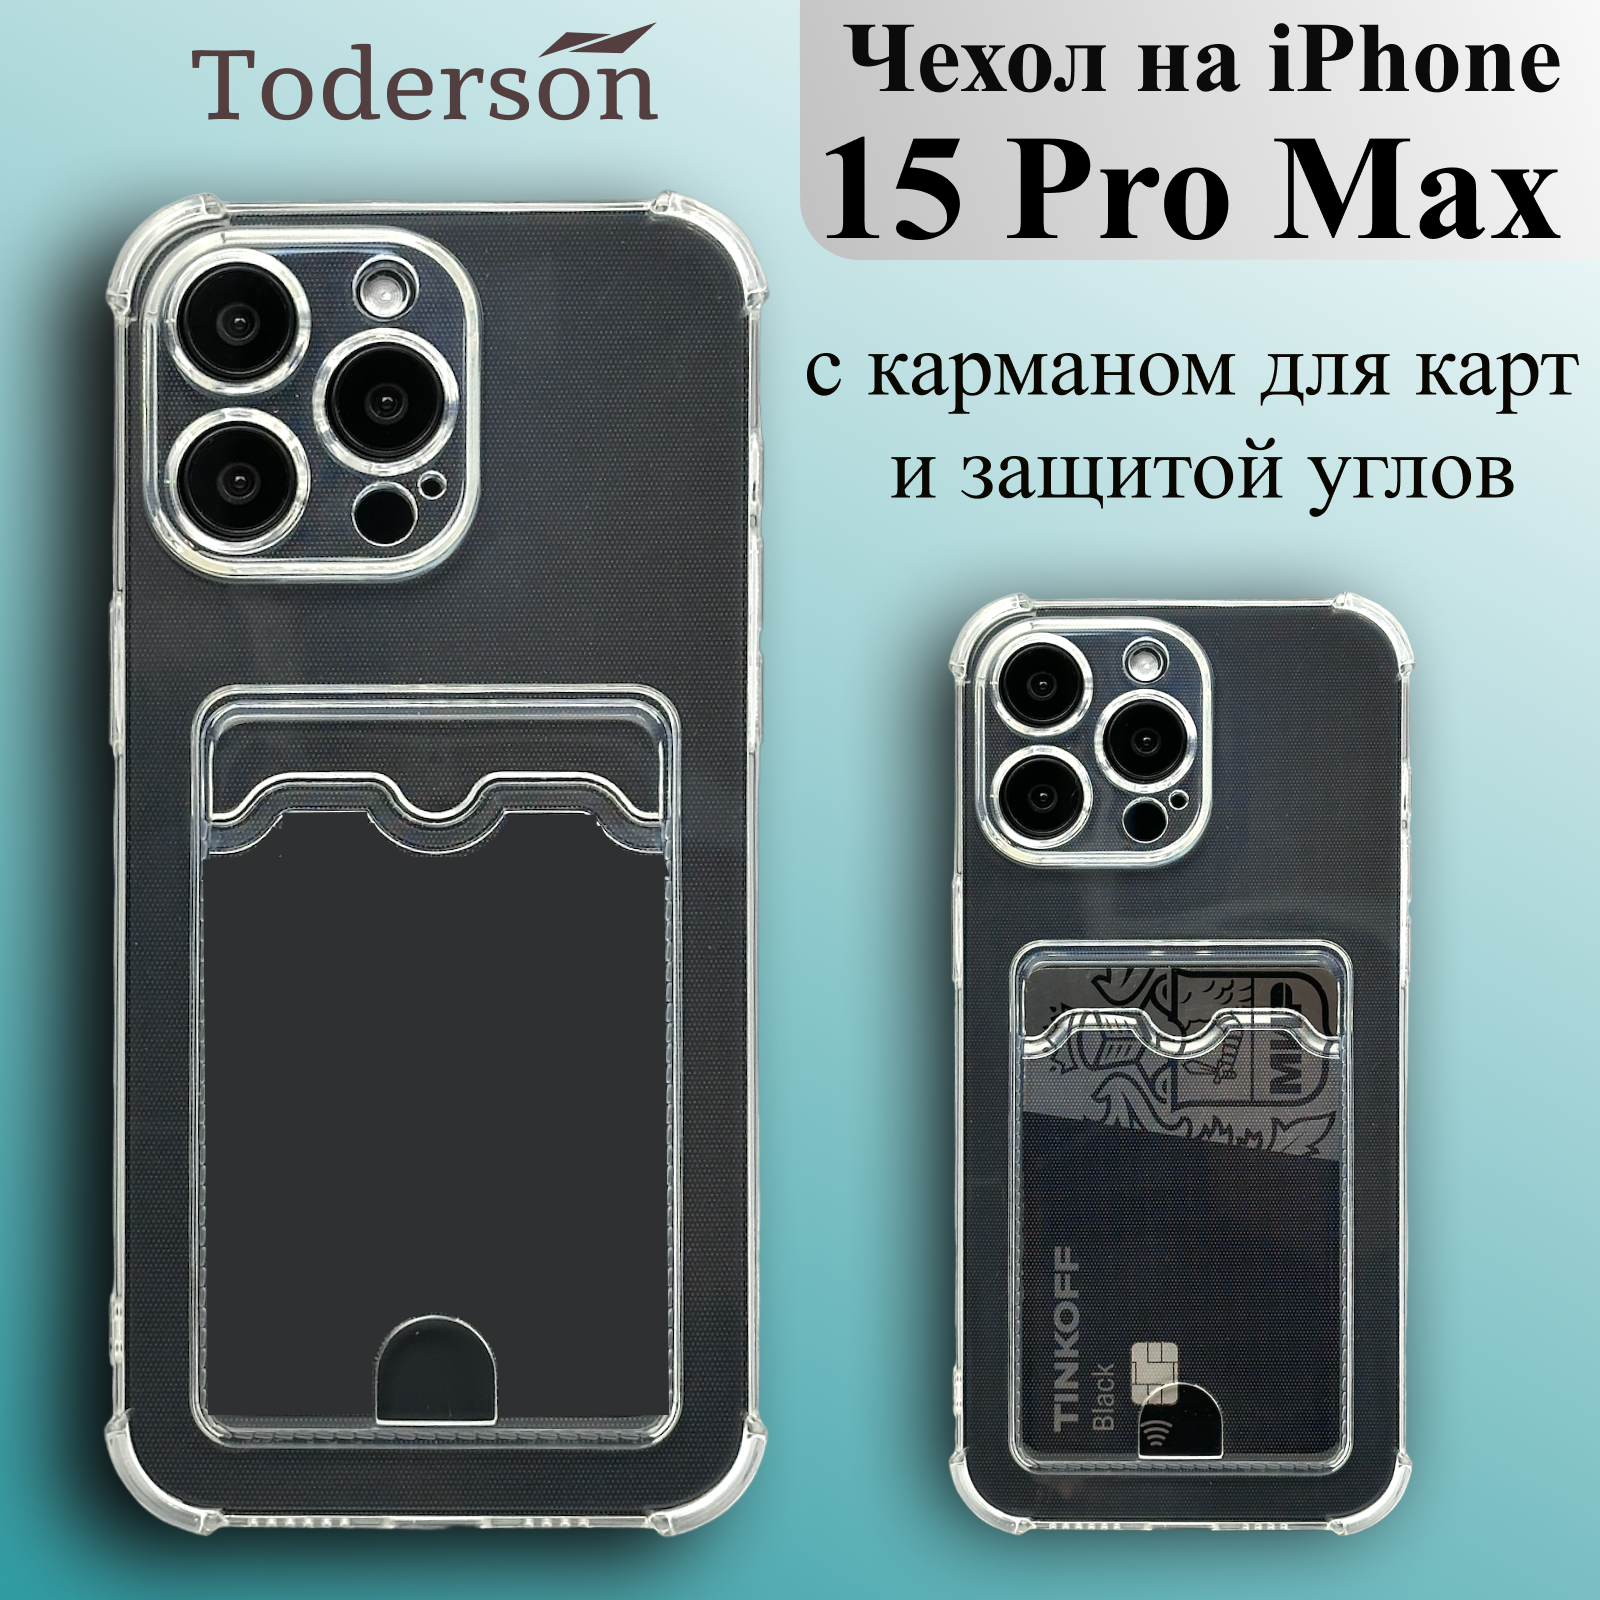 Чехол на iPhone 15 Pro Max с карманом для карт и защитой углов прозрачный